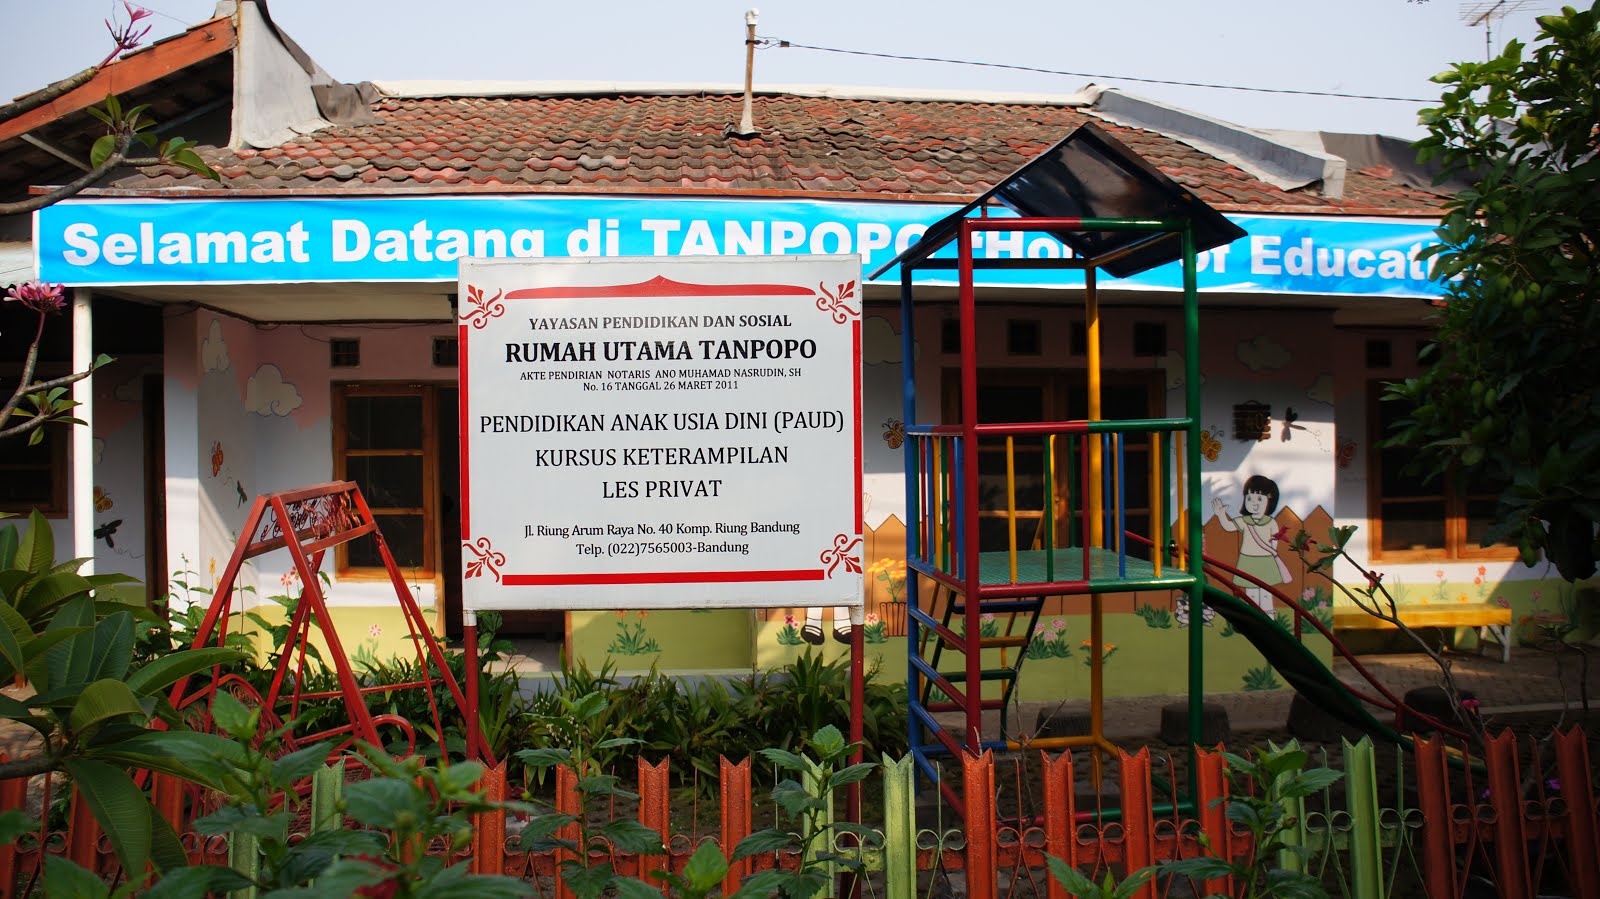 Rumah Utama Tanpopo